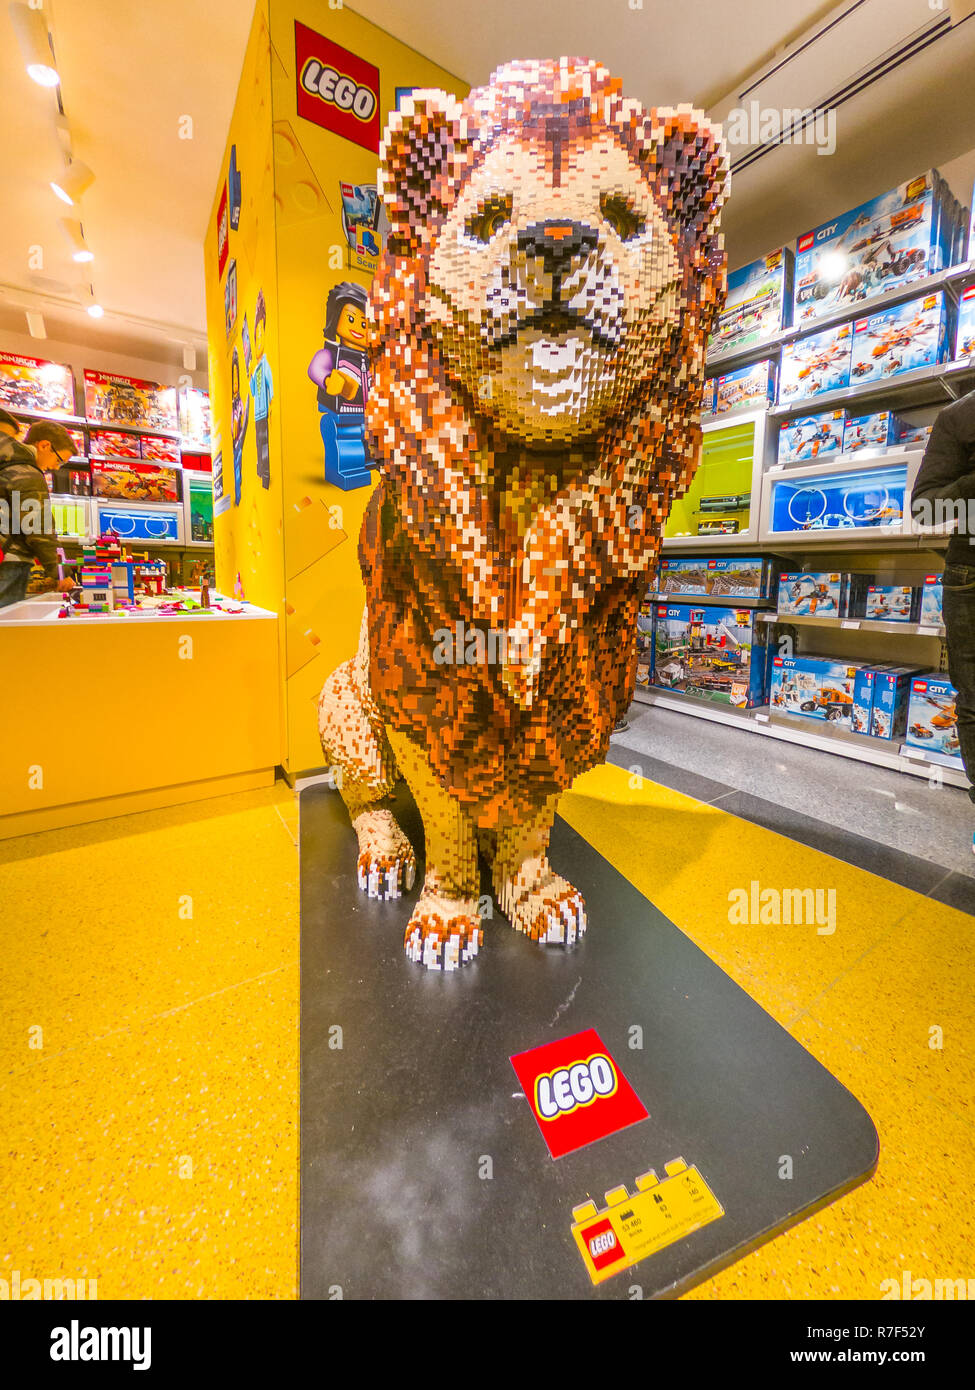 Bologne, Italie - 6 décembre 2018 : Le Roi Lion statue faite de briques Lego  à Bologne. Situé dans la rue Via Indipendenza, inauguré le 6 décembre 2018  au nouveau magasin Lego Photo Stock - Alamy